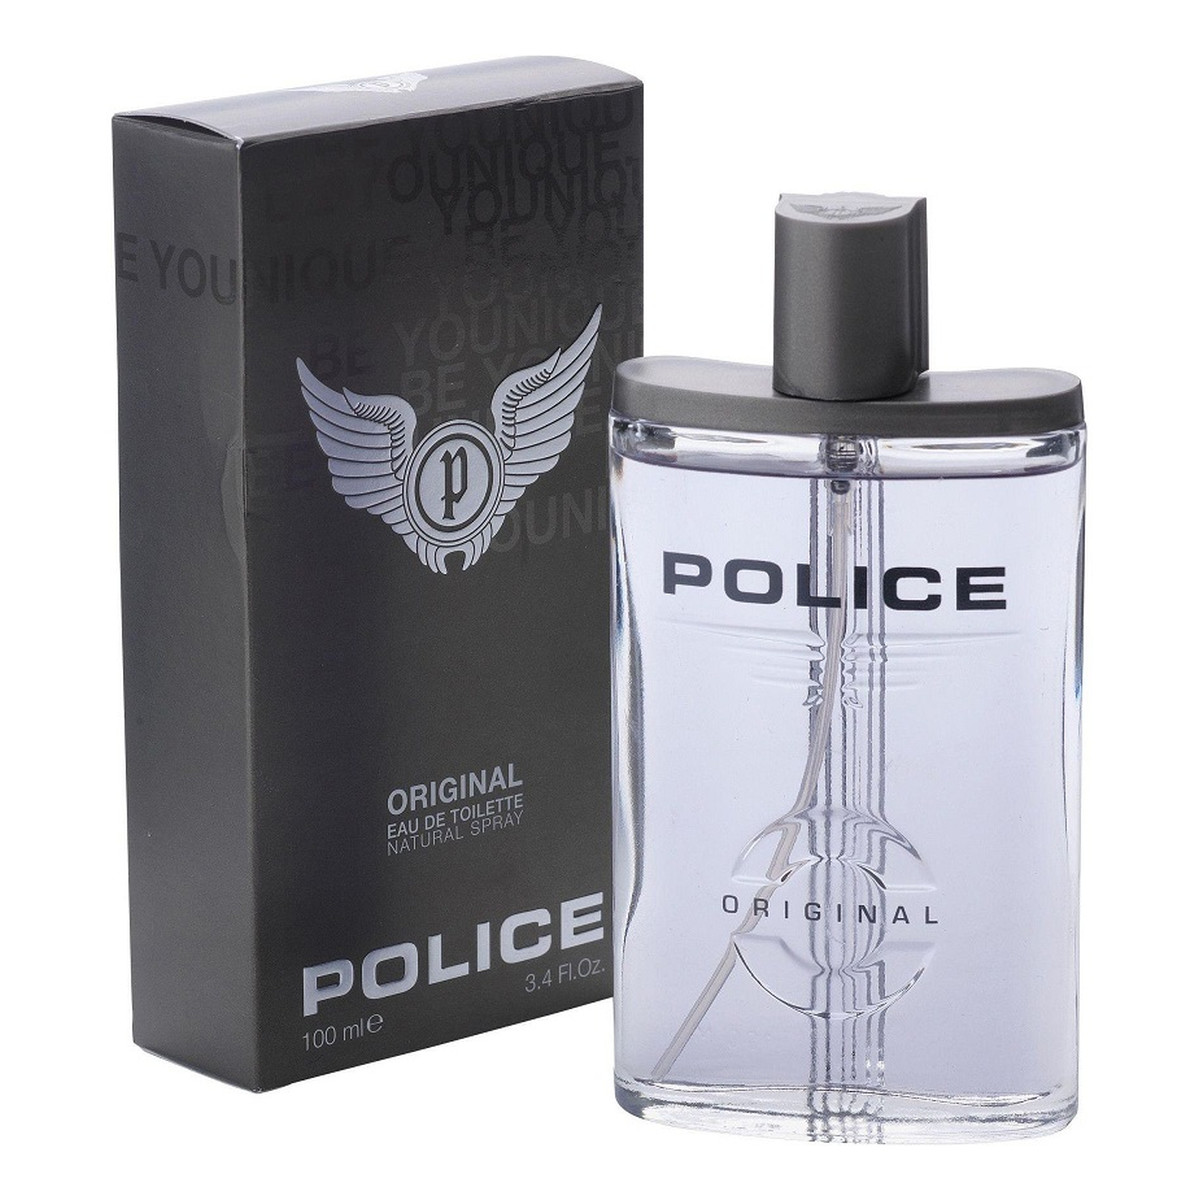 Police Original Woda toaletowa spray 100ml